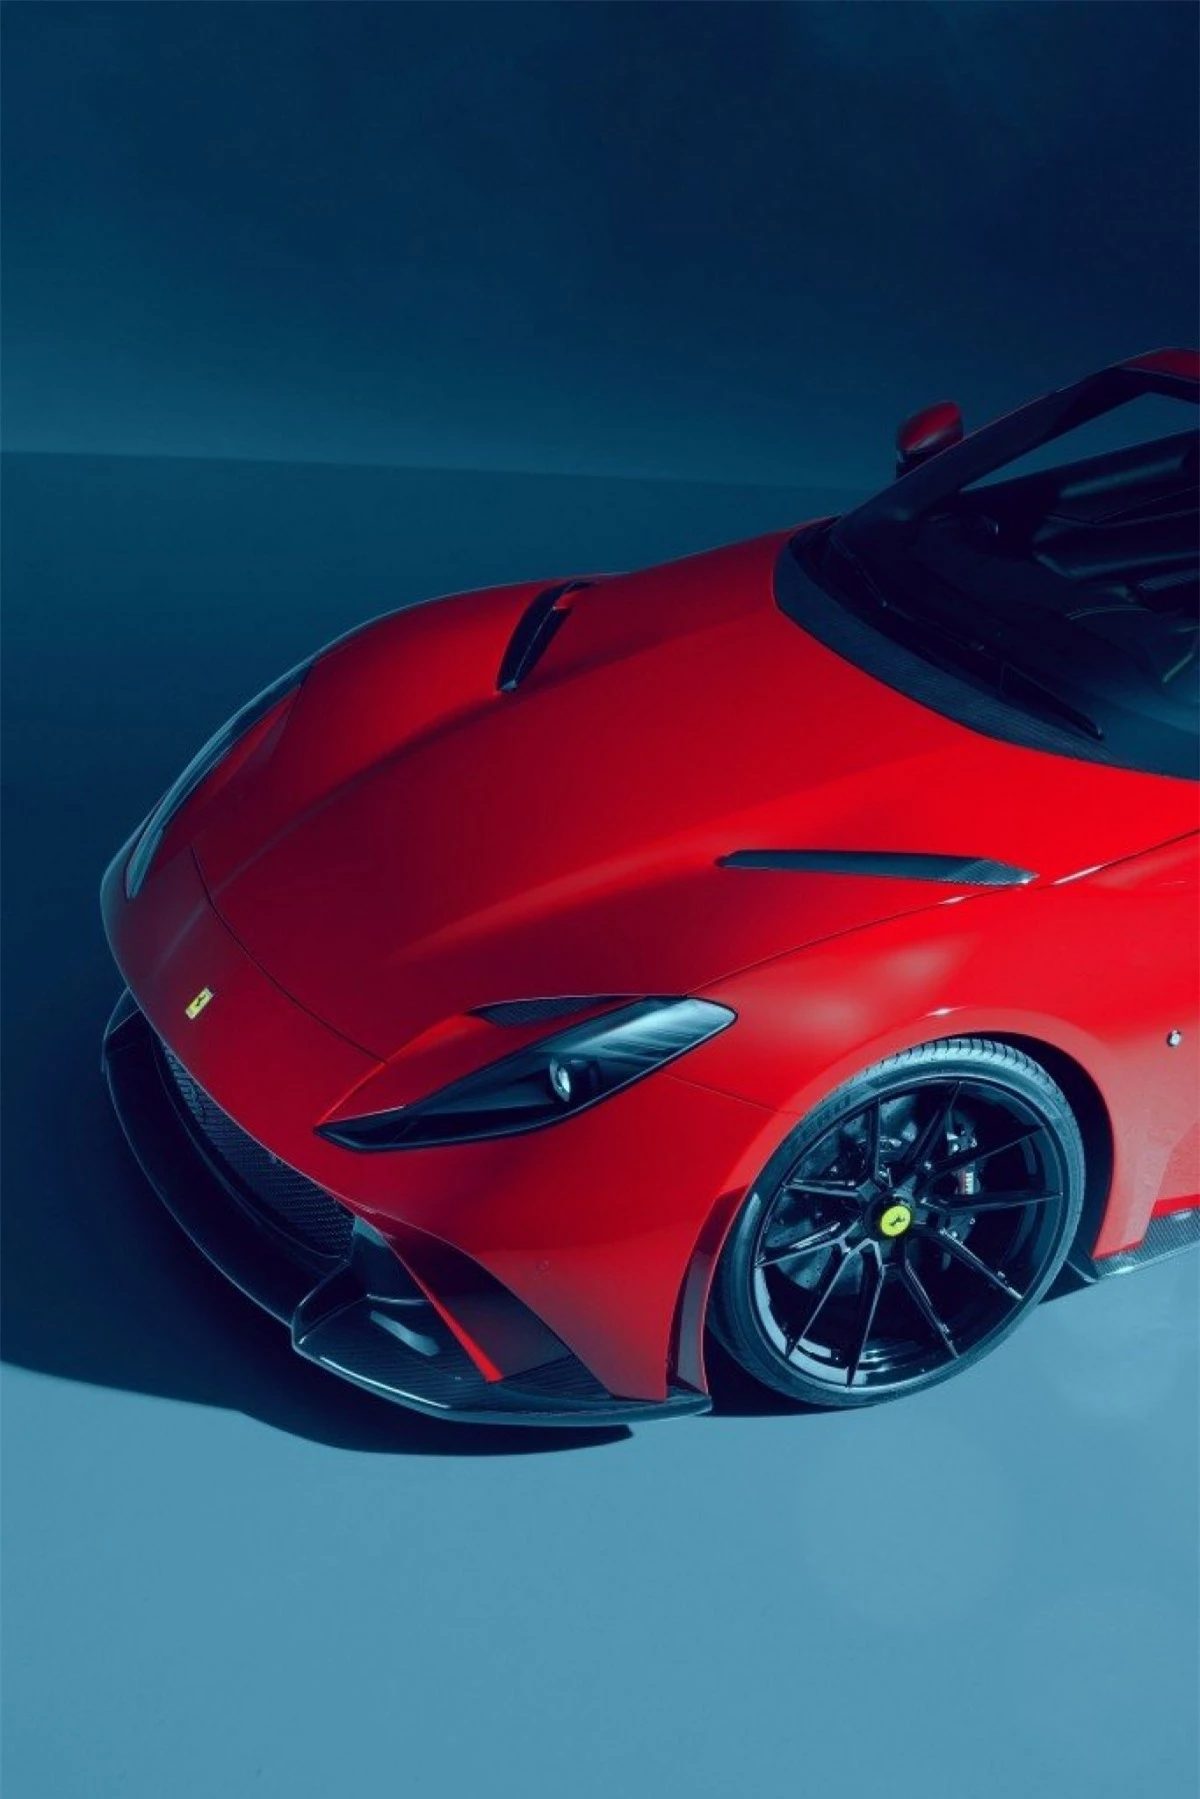 Với bộ nâng cấp này, khối động cơ V12 hút khí tự nhiên, dung tích 6.5 lít của Ferrari 812 GTS có thể tạo ra công suất cực đại 840 mã lực tại vòng tua máy 8.750 vòng/phút cùng mô-men xoắn cực đại 751 Nm tại vòng tua máy 7.300 vòng/phút.